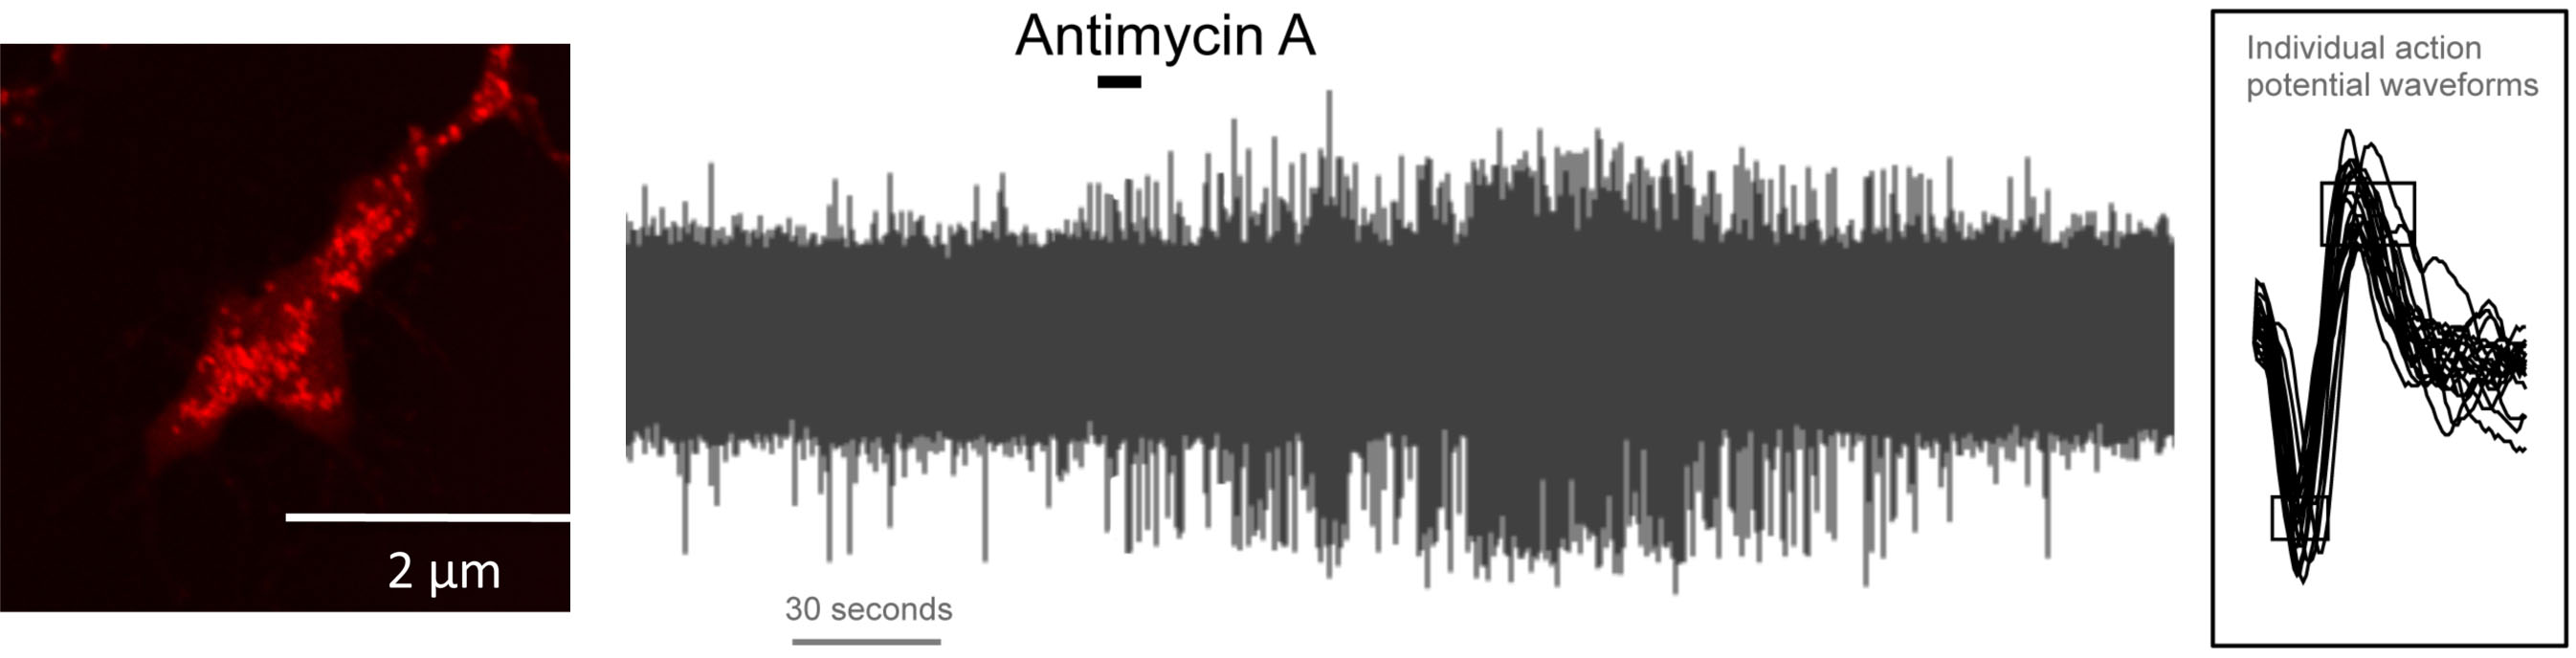 example of antimycin A